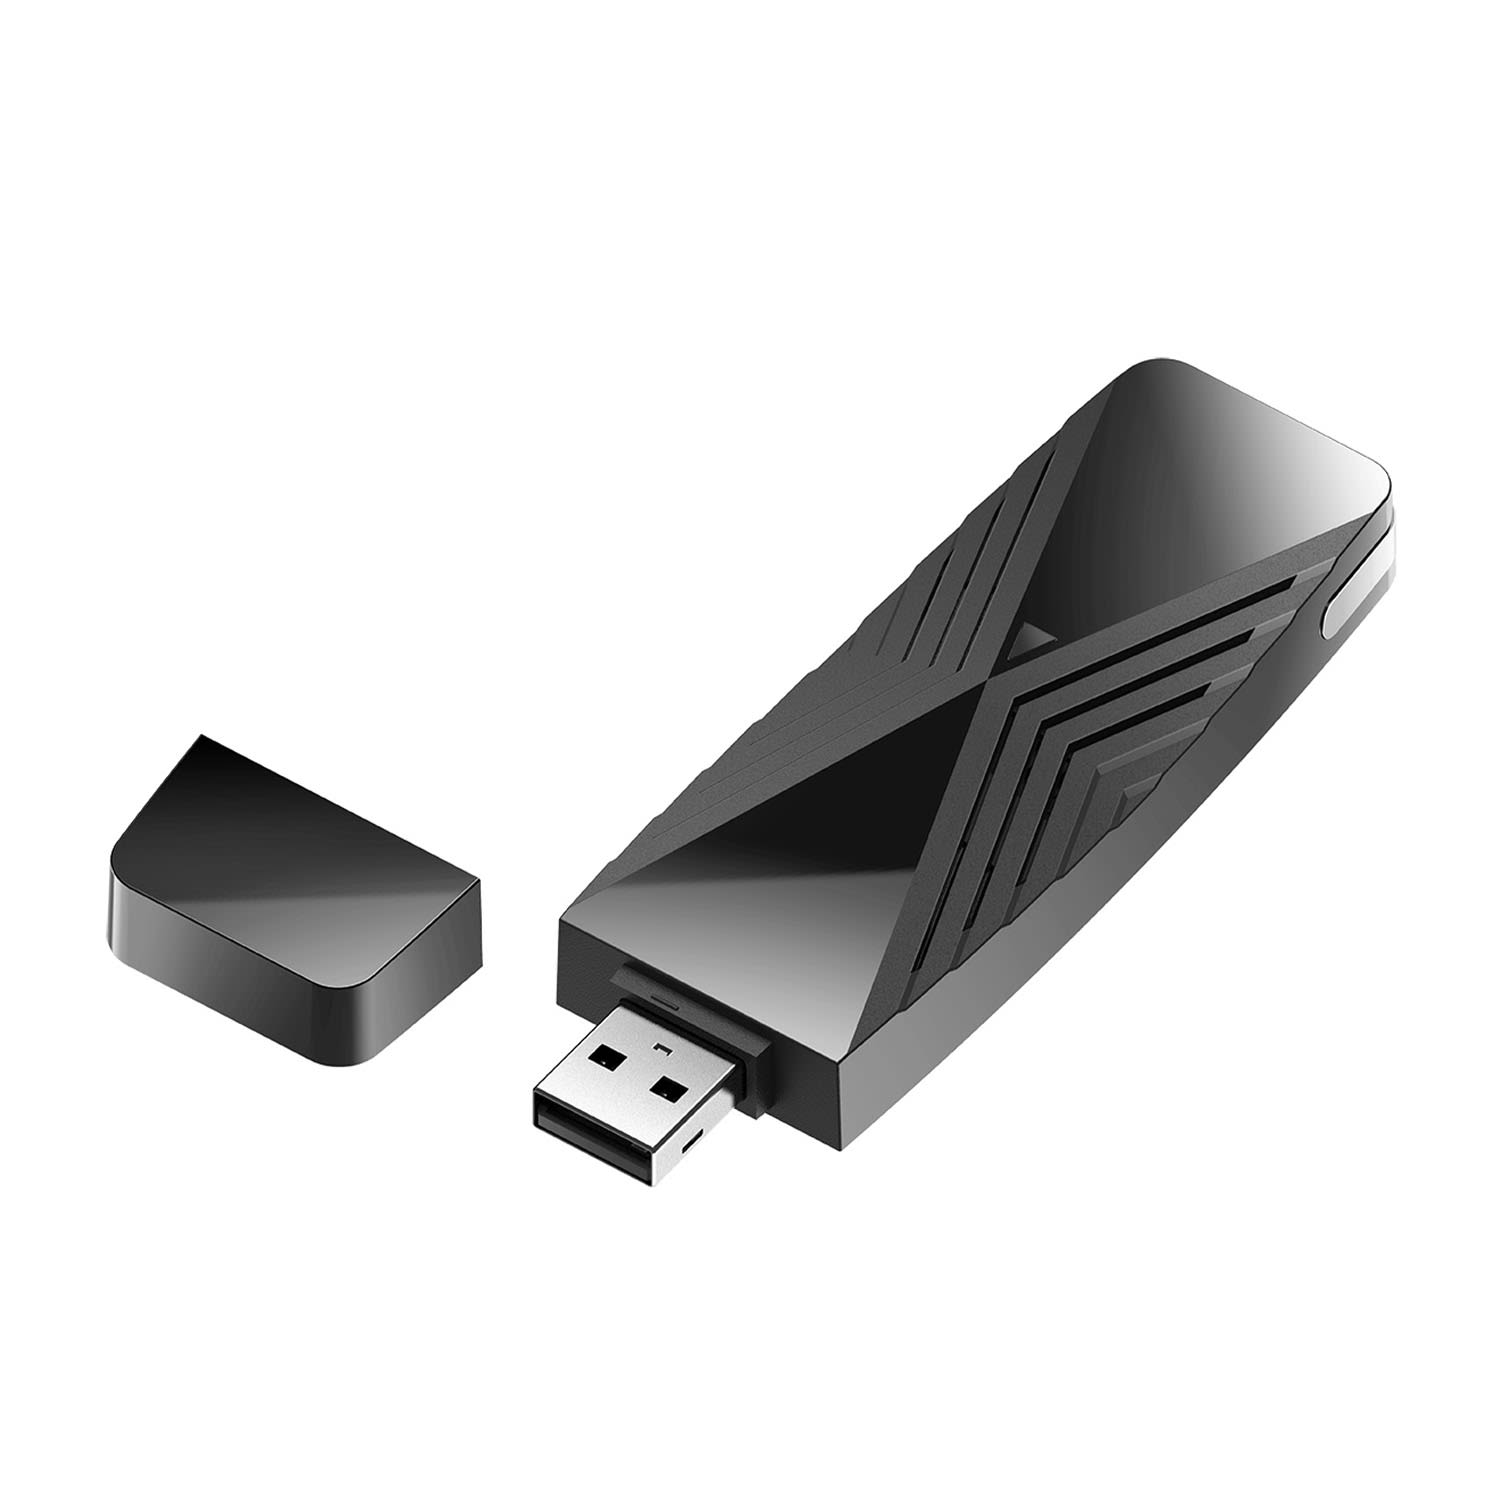 ADATTATORE USB WI-FI 6 AX1800 - DWA-X1850 / D Link, la nuova generazione di Wi-Fi